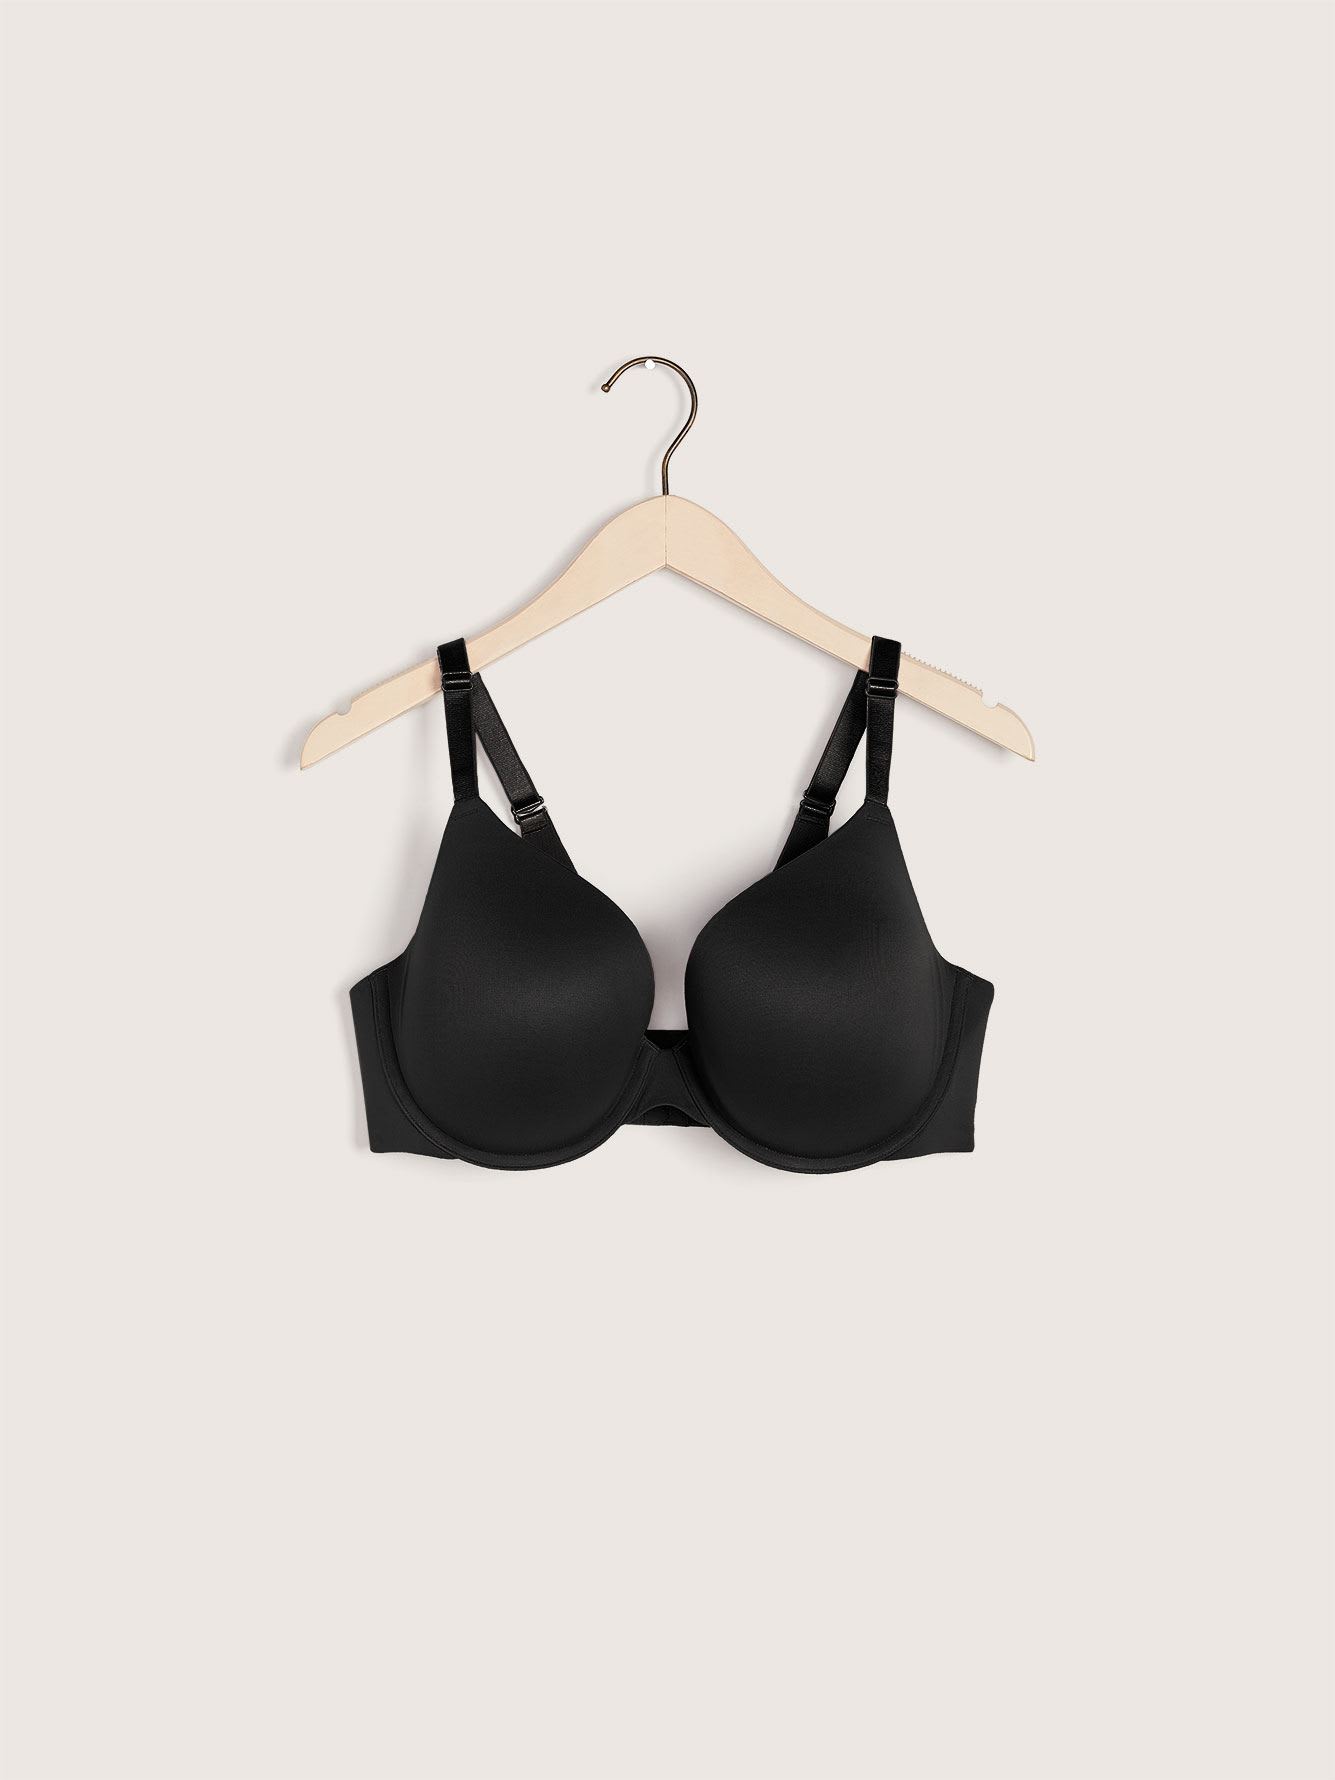 Wholesale bras 44dd underwire For Supportive Underwear 